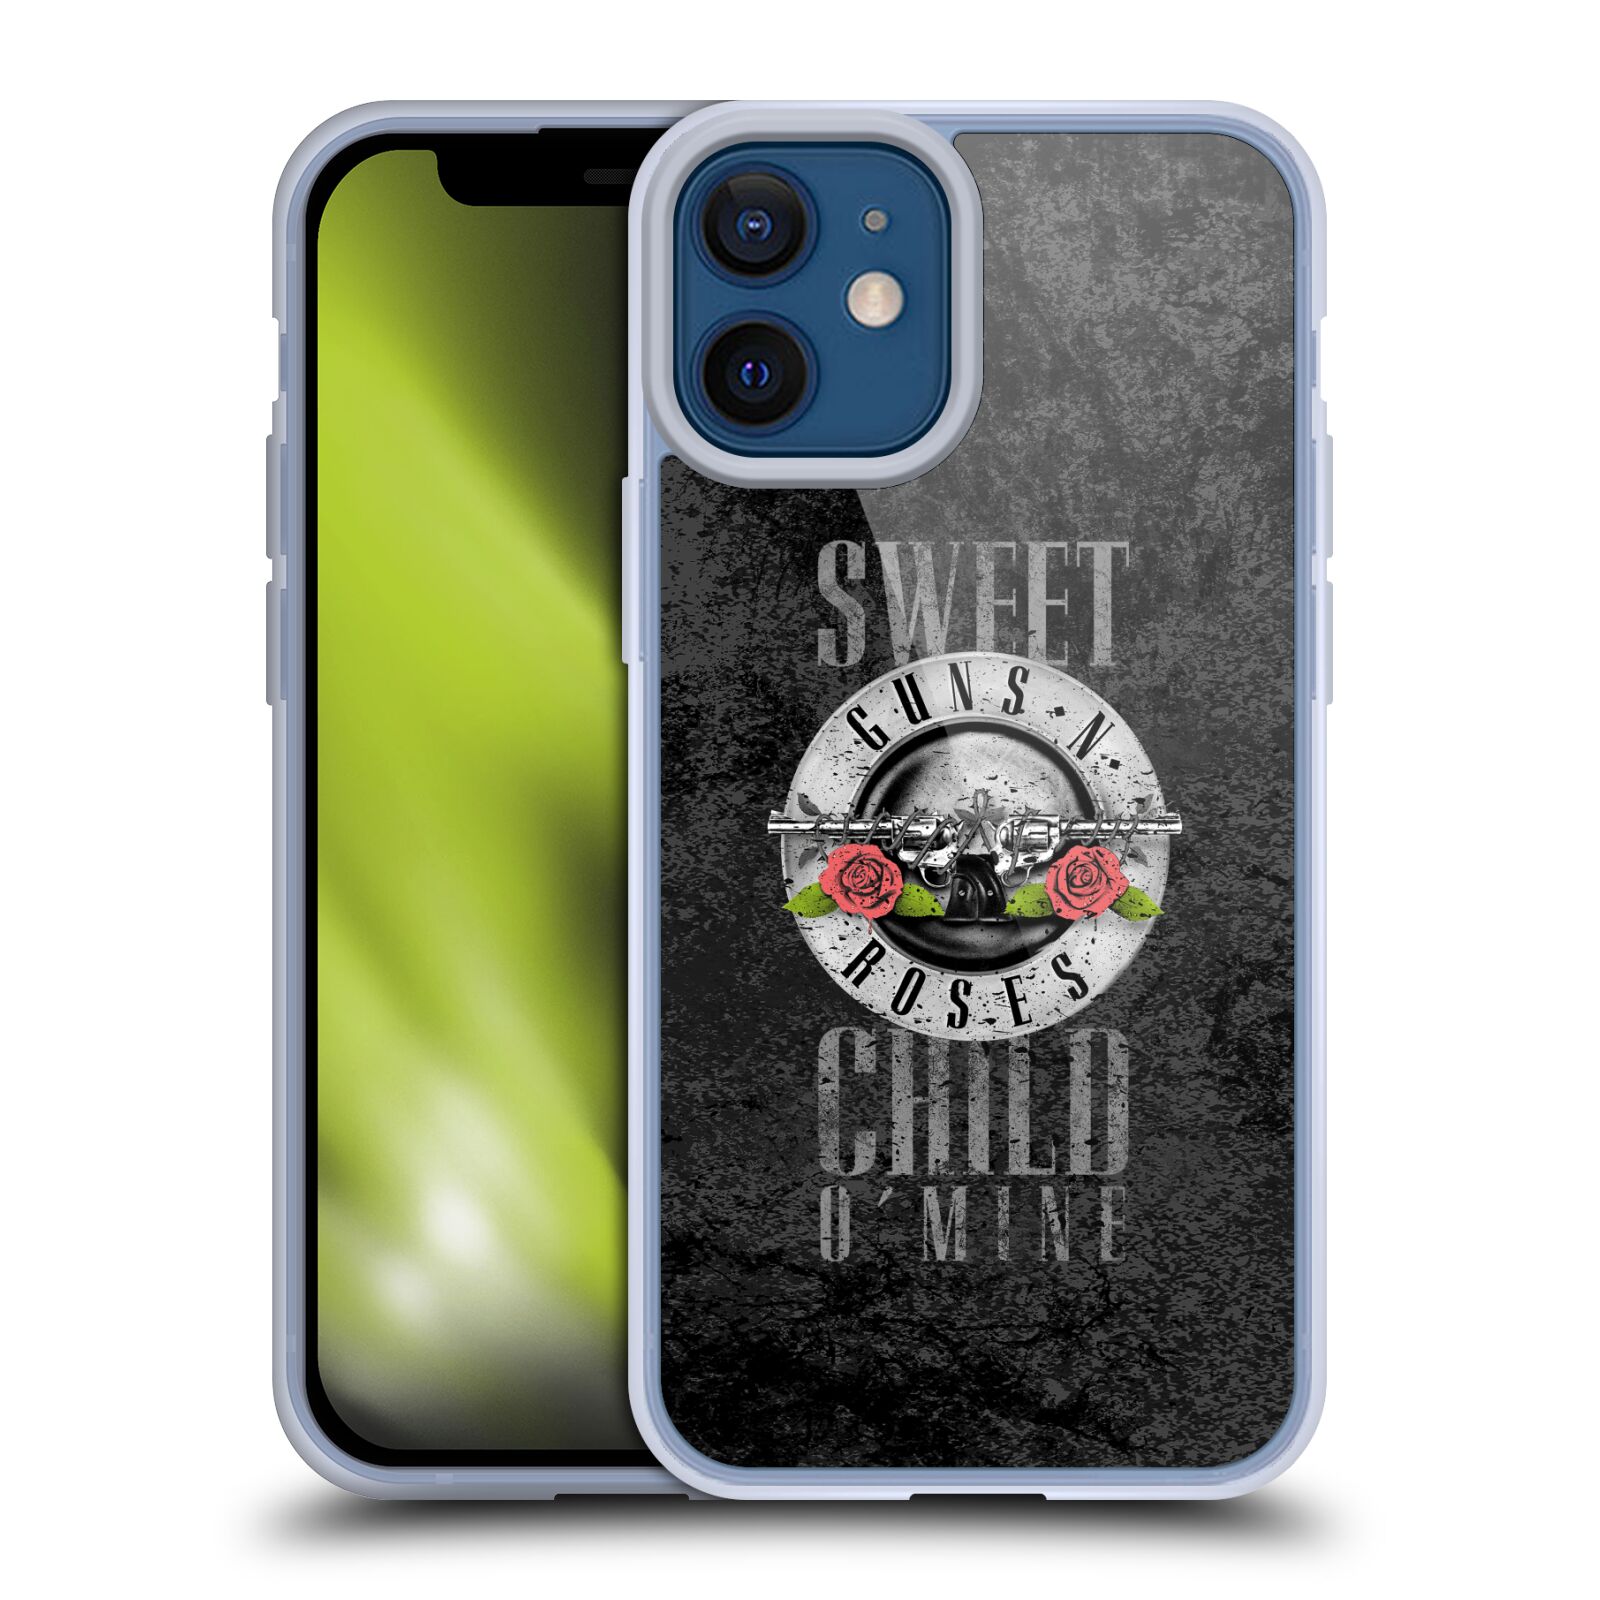 Silikonové pouzdro na mobil Apple iPhone 12 Mini - Head Case - Guns N' Roses - Sweet Child (Silikonový kryt, obal, pouzdro na mobilní telefon Apple iPhone 12 Mini (5,4") s motivem Guns N' Roses - Sweet Child)